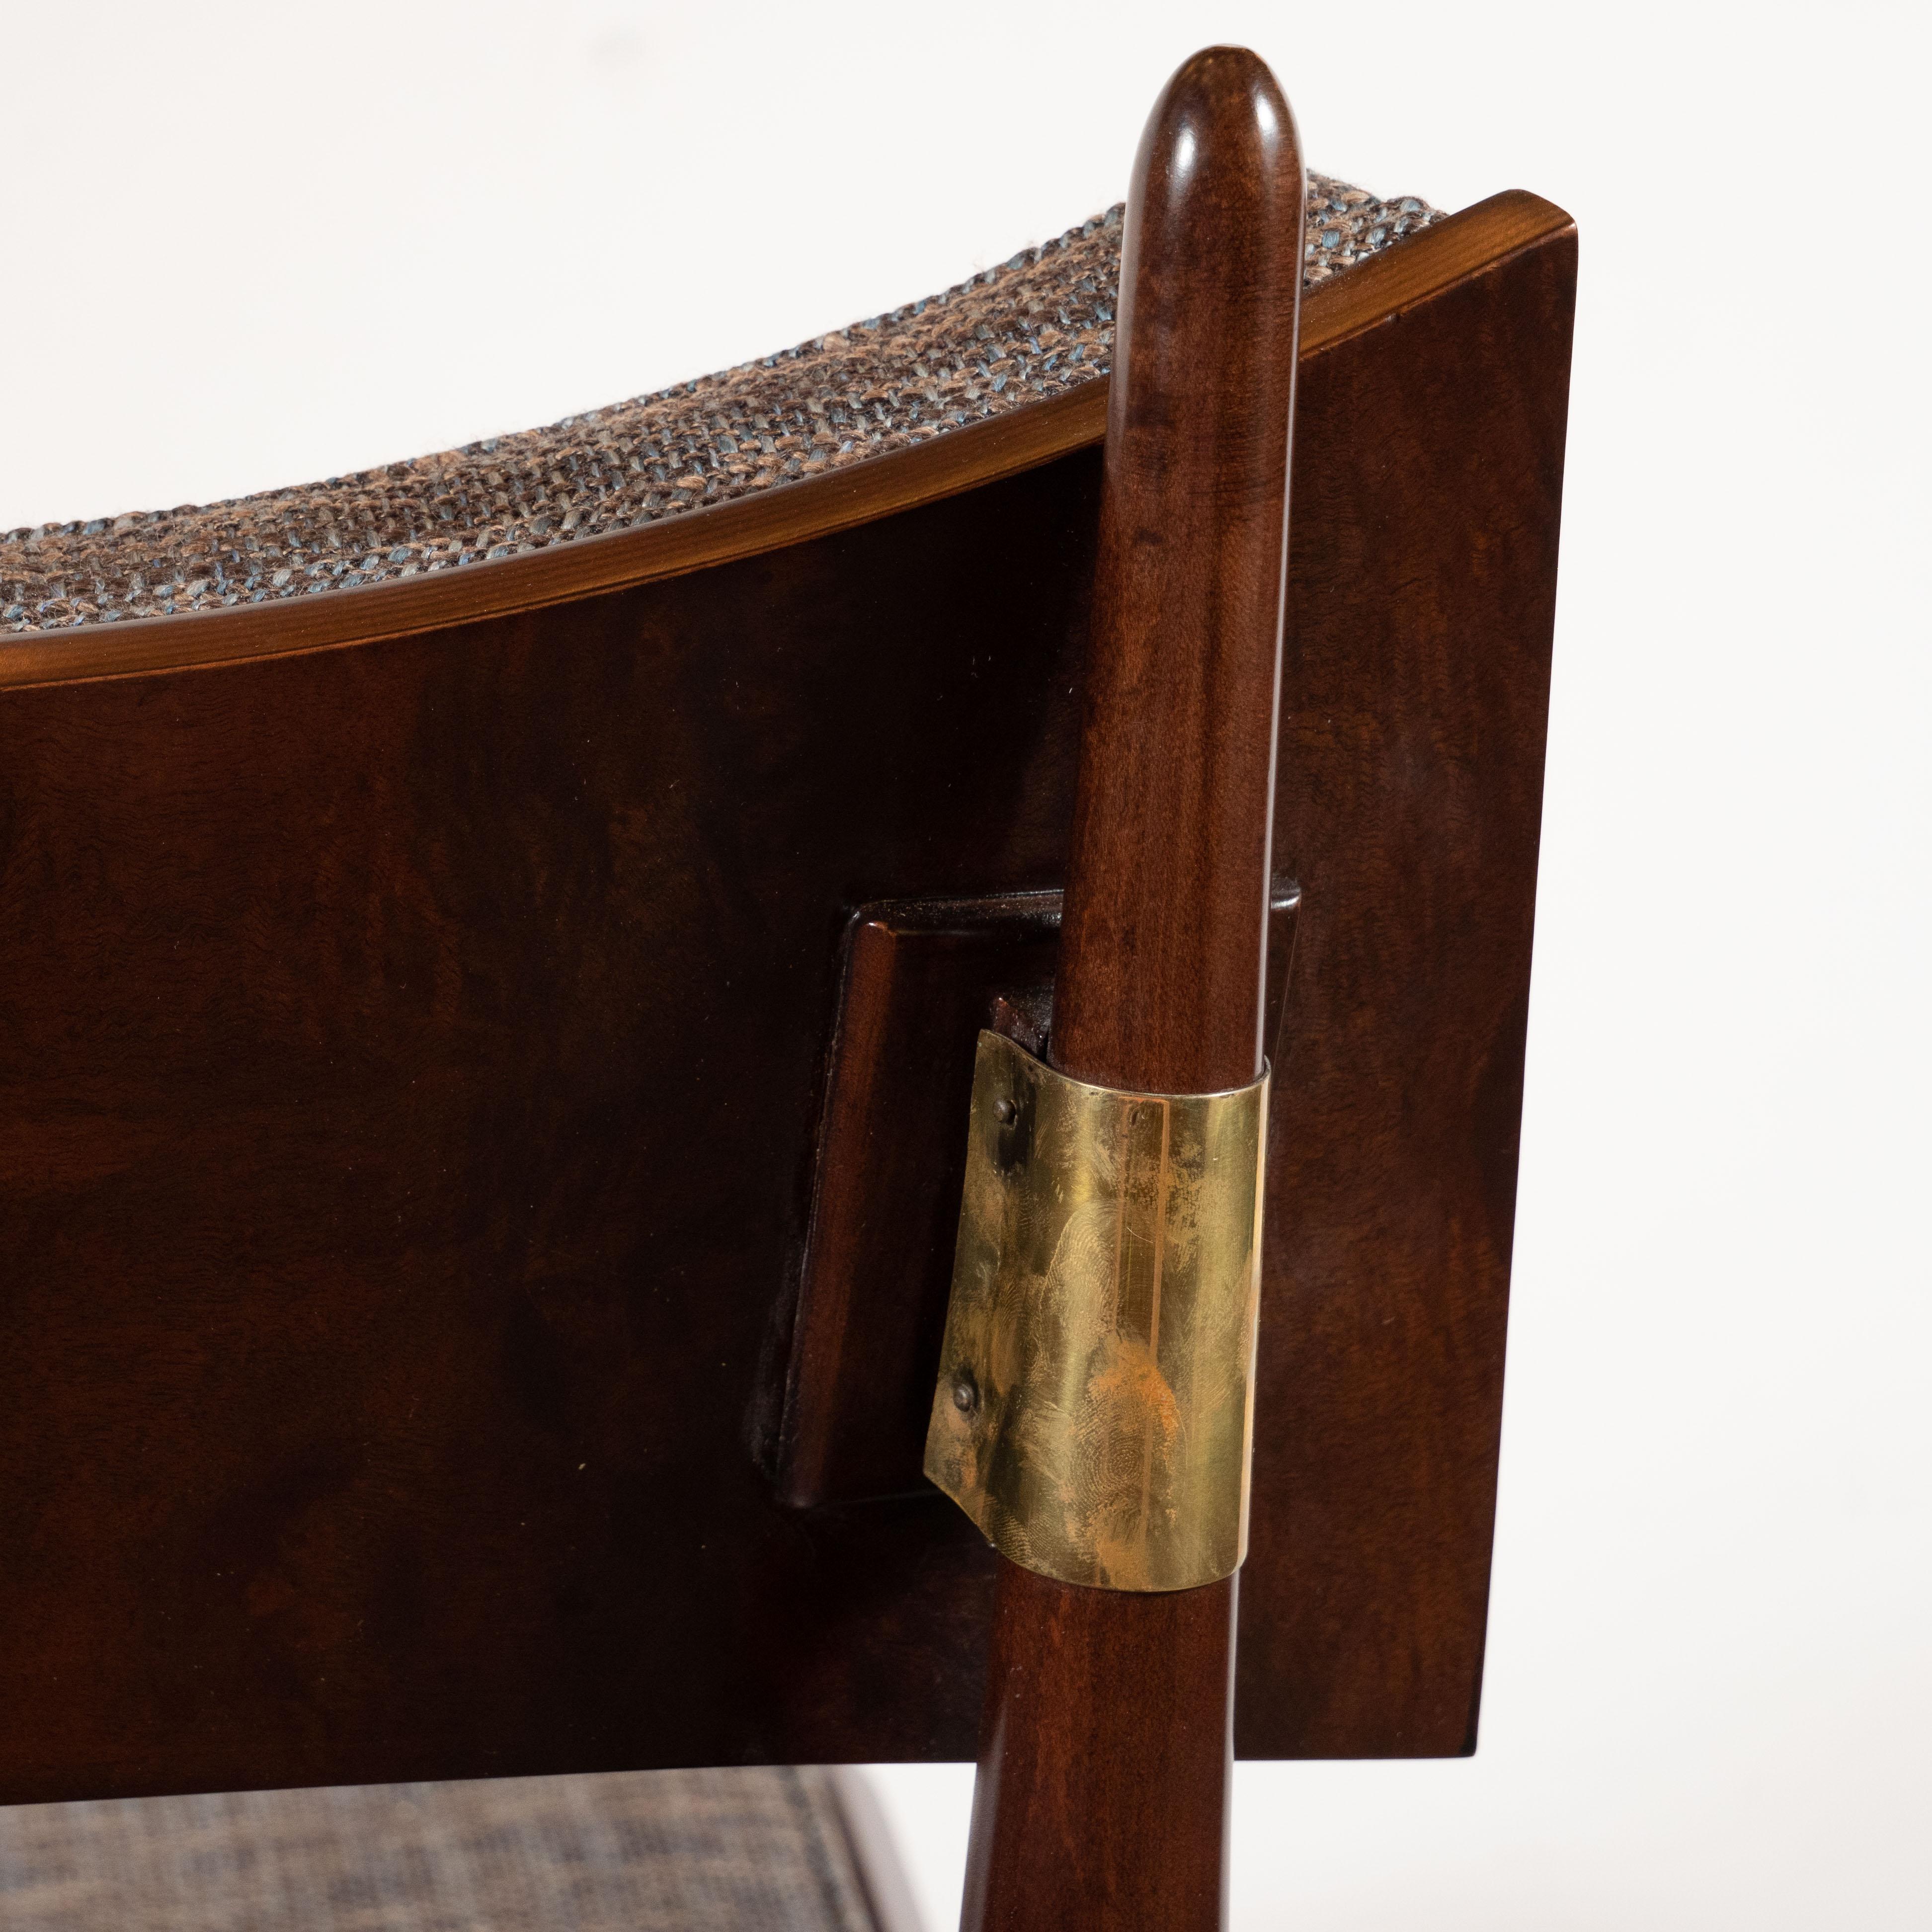 Midcentury Modern Klismos Walnut & Brass Chair by Harold Schwartz for Romweber 1